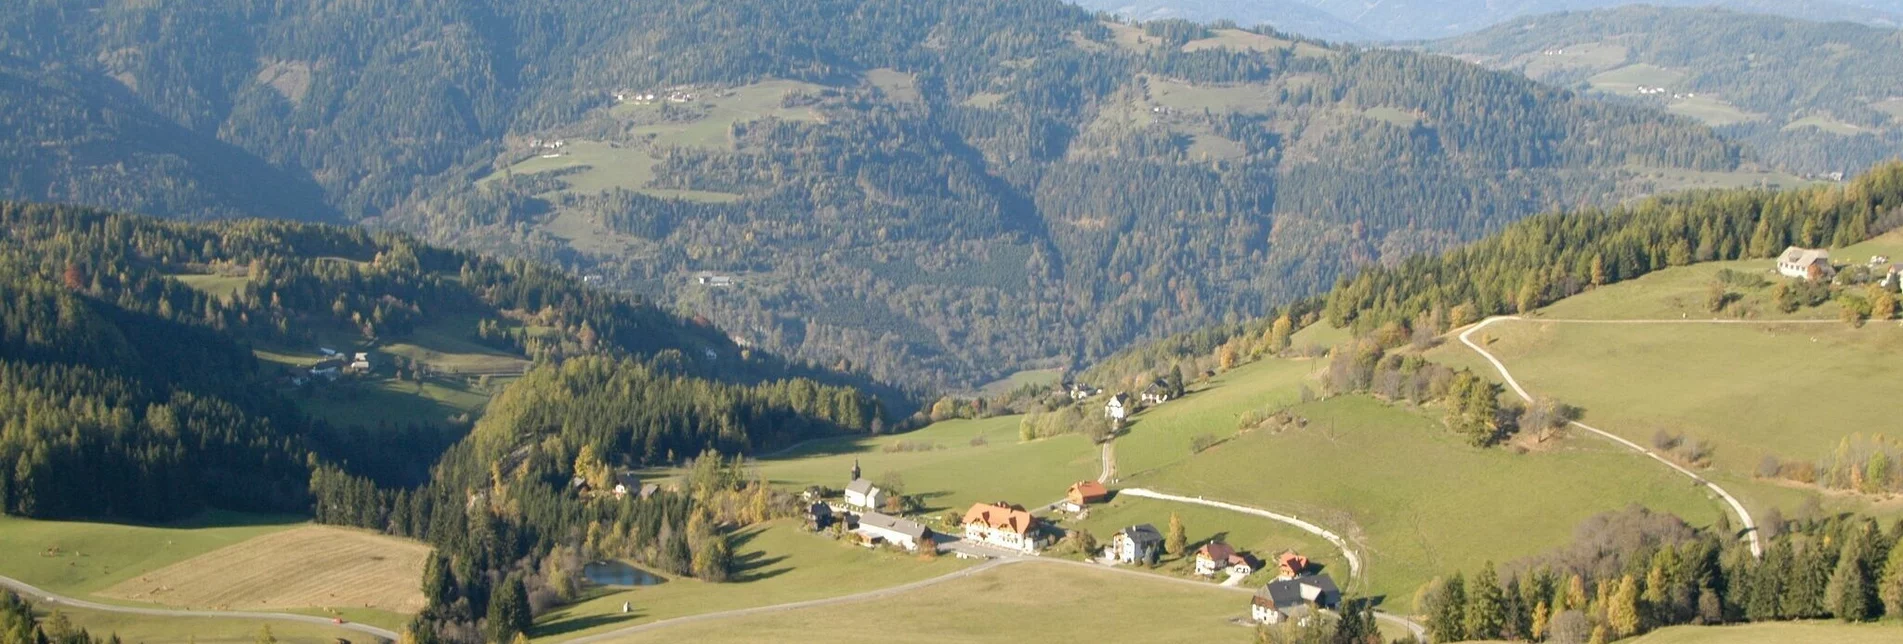 Wanderung Von der Karchau nach St. Lambrecht - Touren-Impression #1 | © Tourismusverband Region Murau